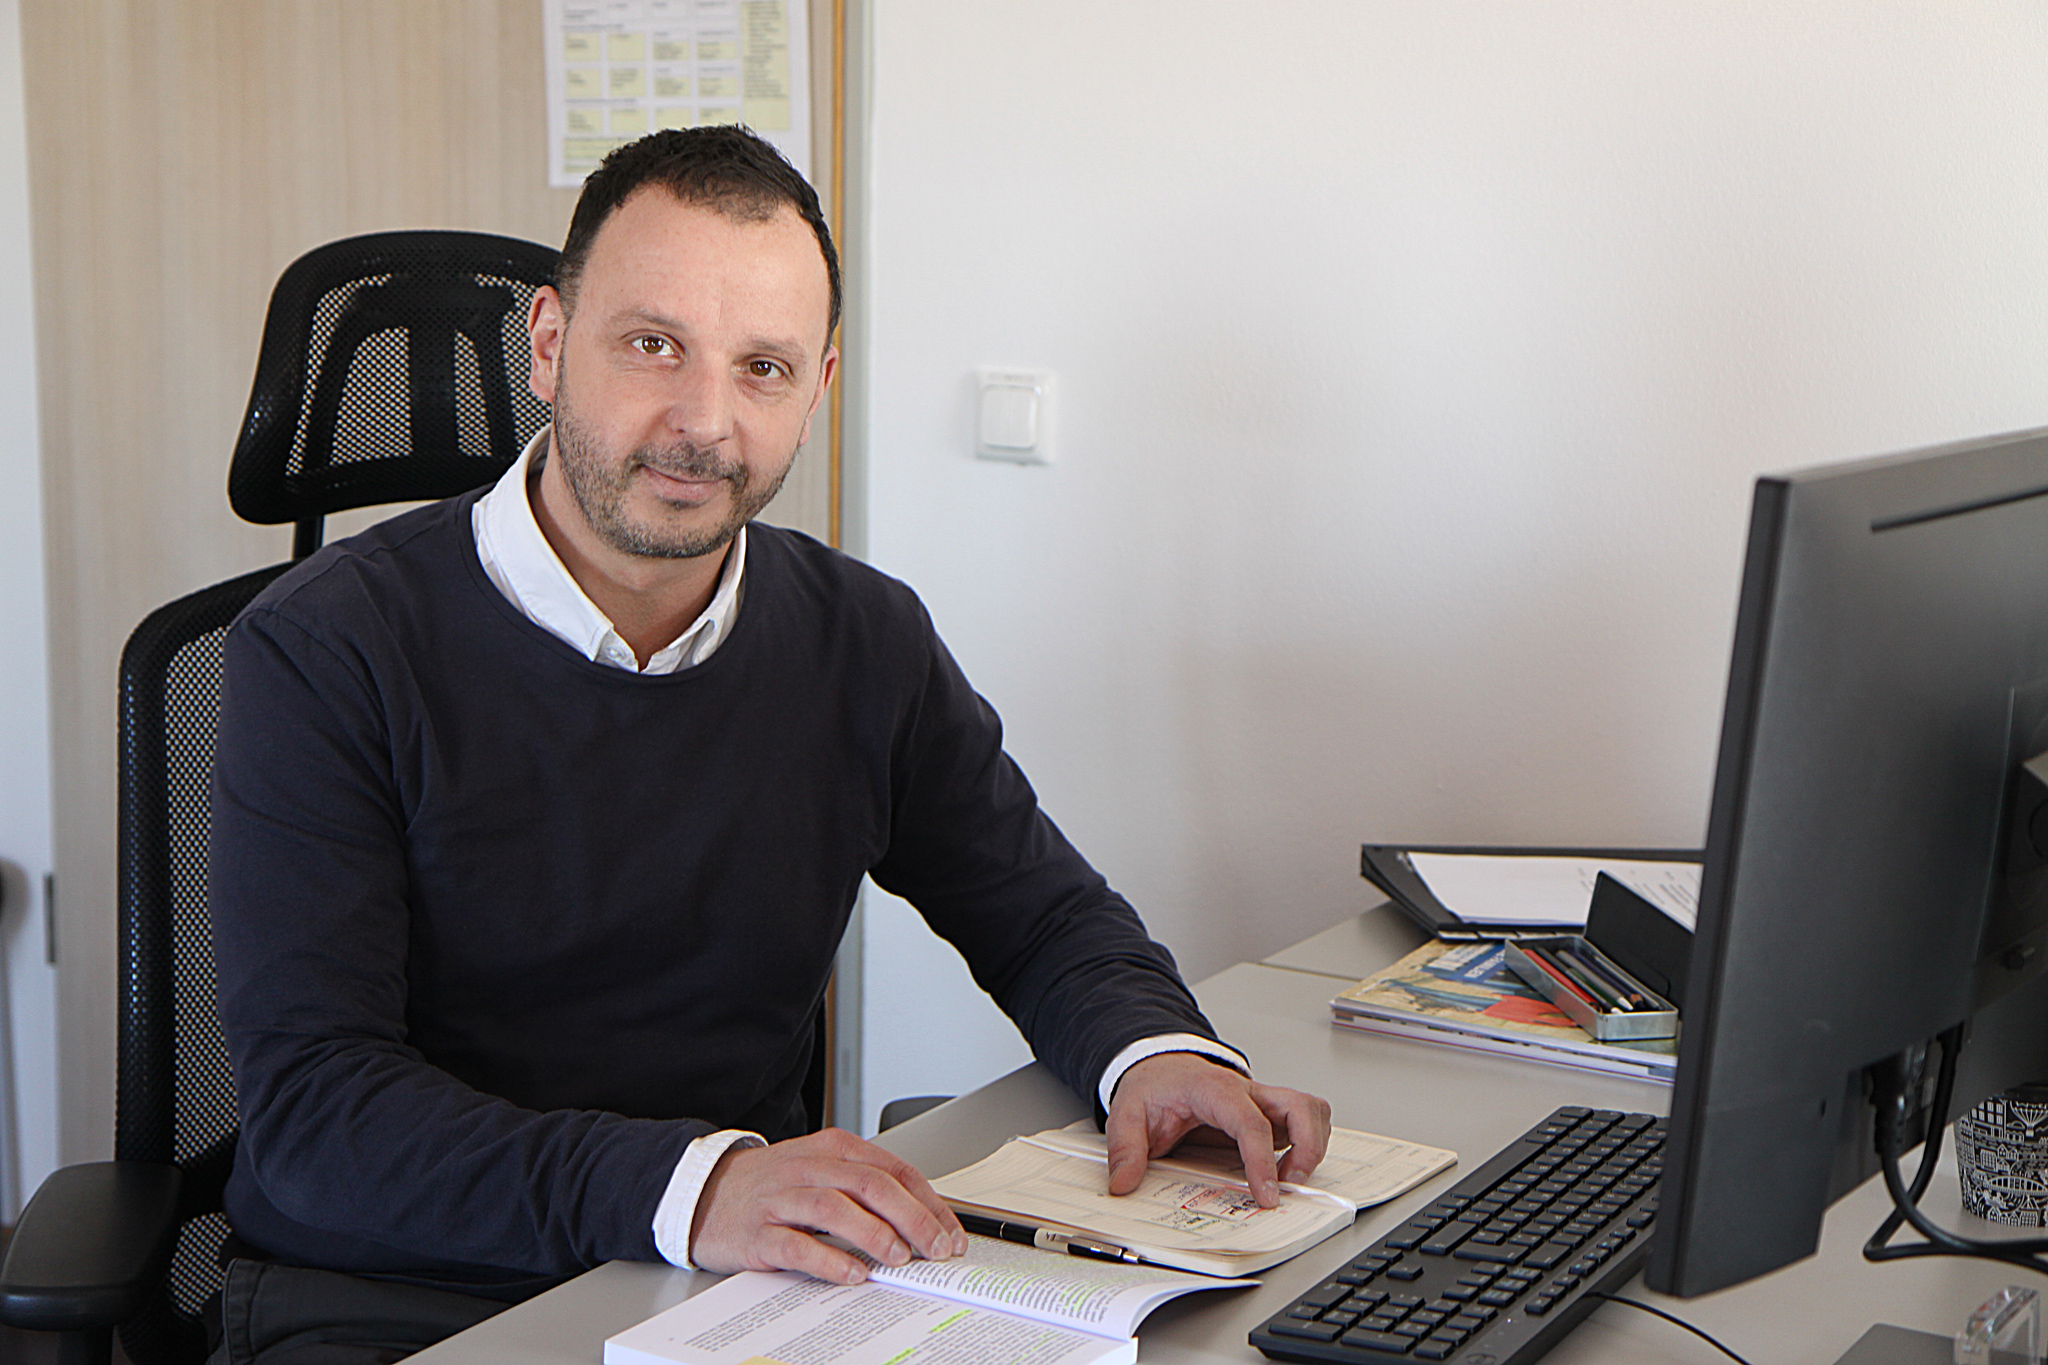 Mitgestalten an einer inklusiven Gesellschaft: Stefan Dörle ist der neue Inklusionsbeauftragte beim Bezirk Schwaben